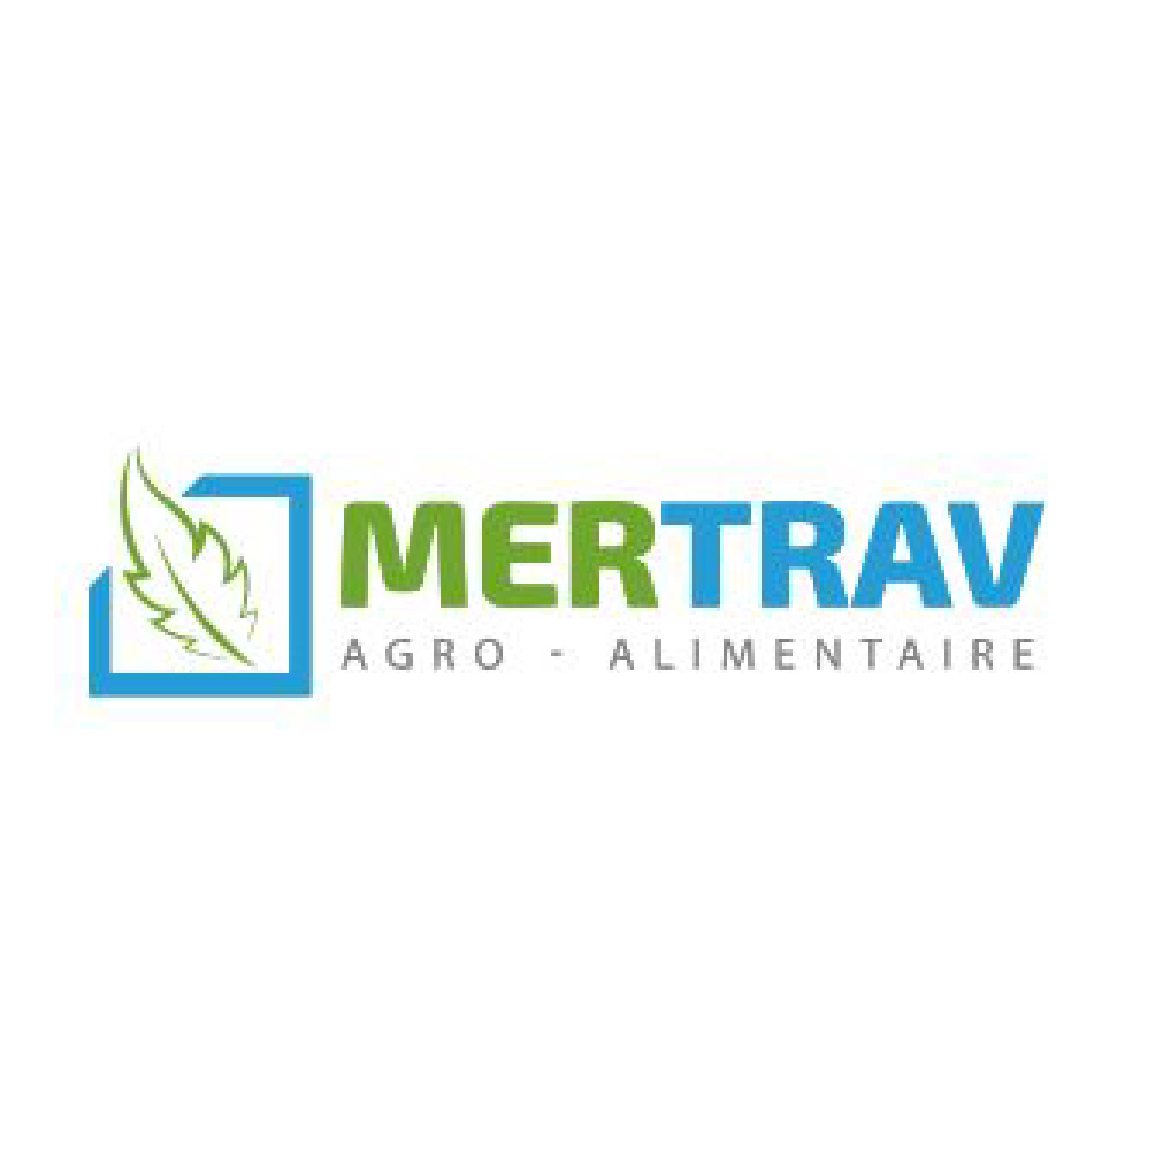 MerTrav